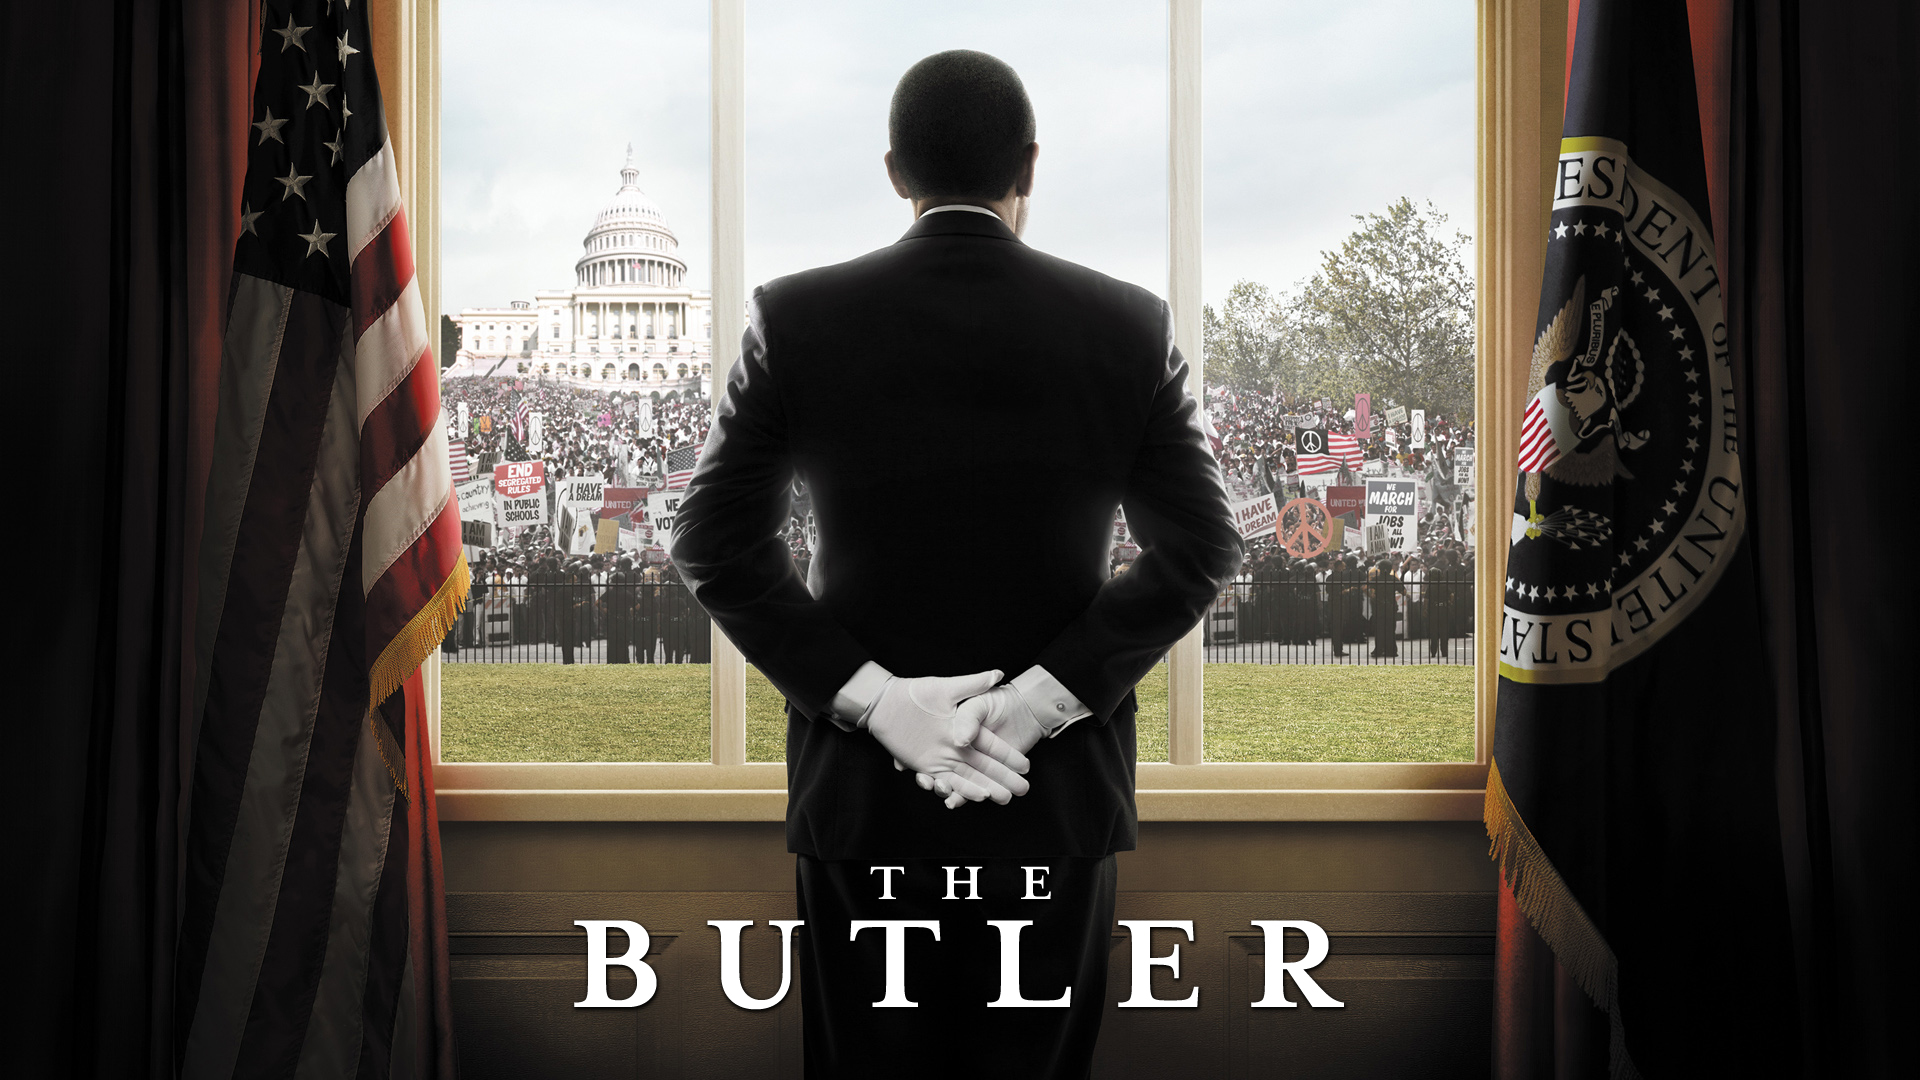 The butler